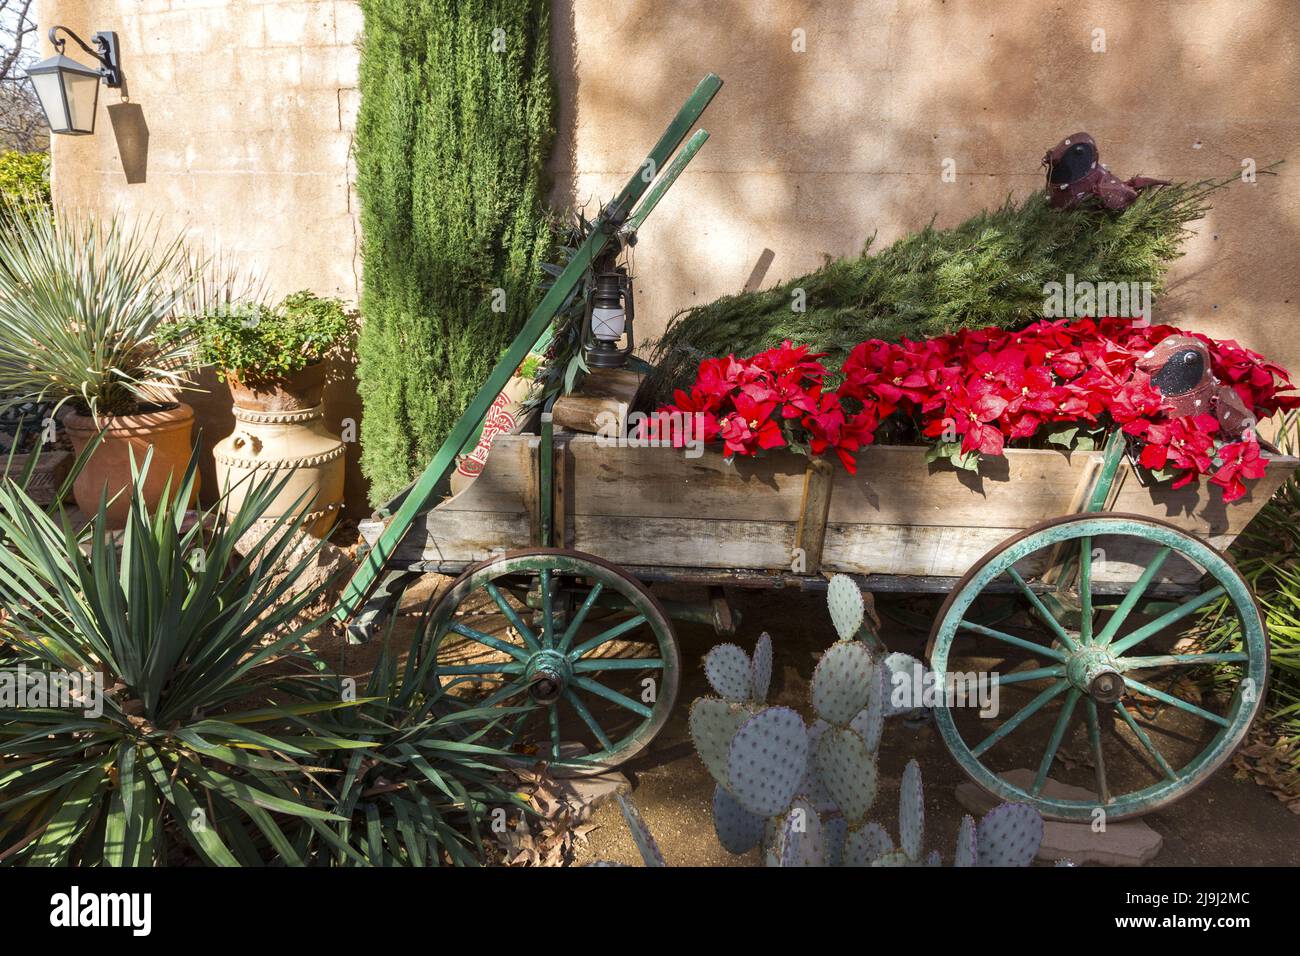 Carrito de flores de caballo de madera con flores rojas Descall de plantas de cactus verde. Tlaquepaque Spanish Arts Crafts Village, Sedona, Arizona, EE.UU Foto de stock